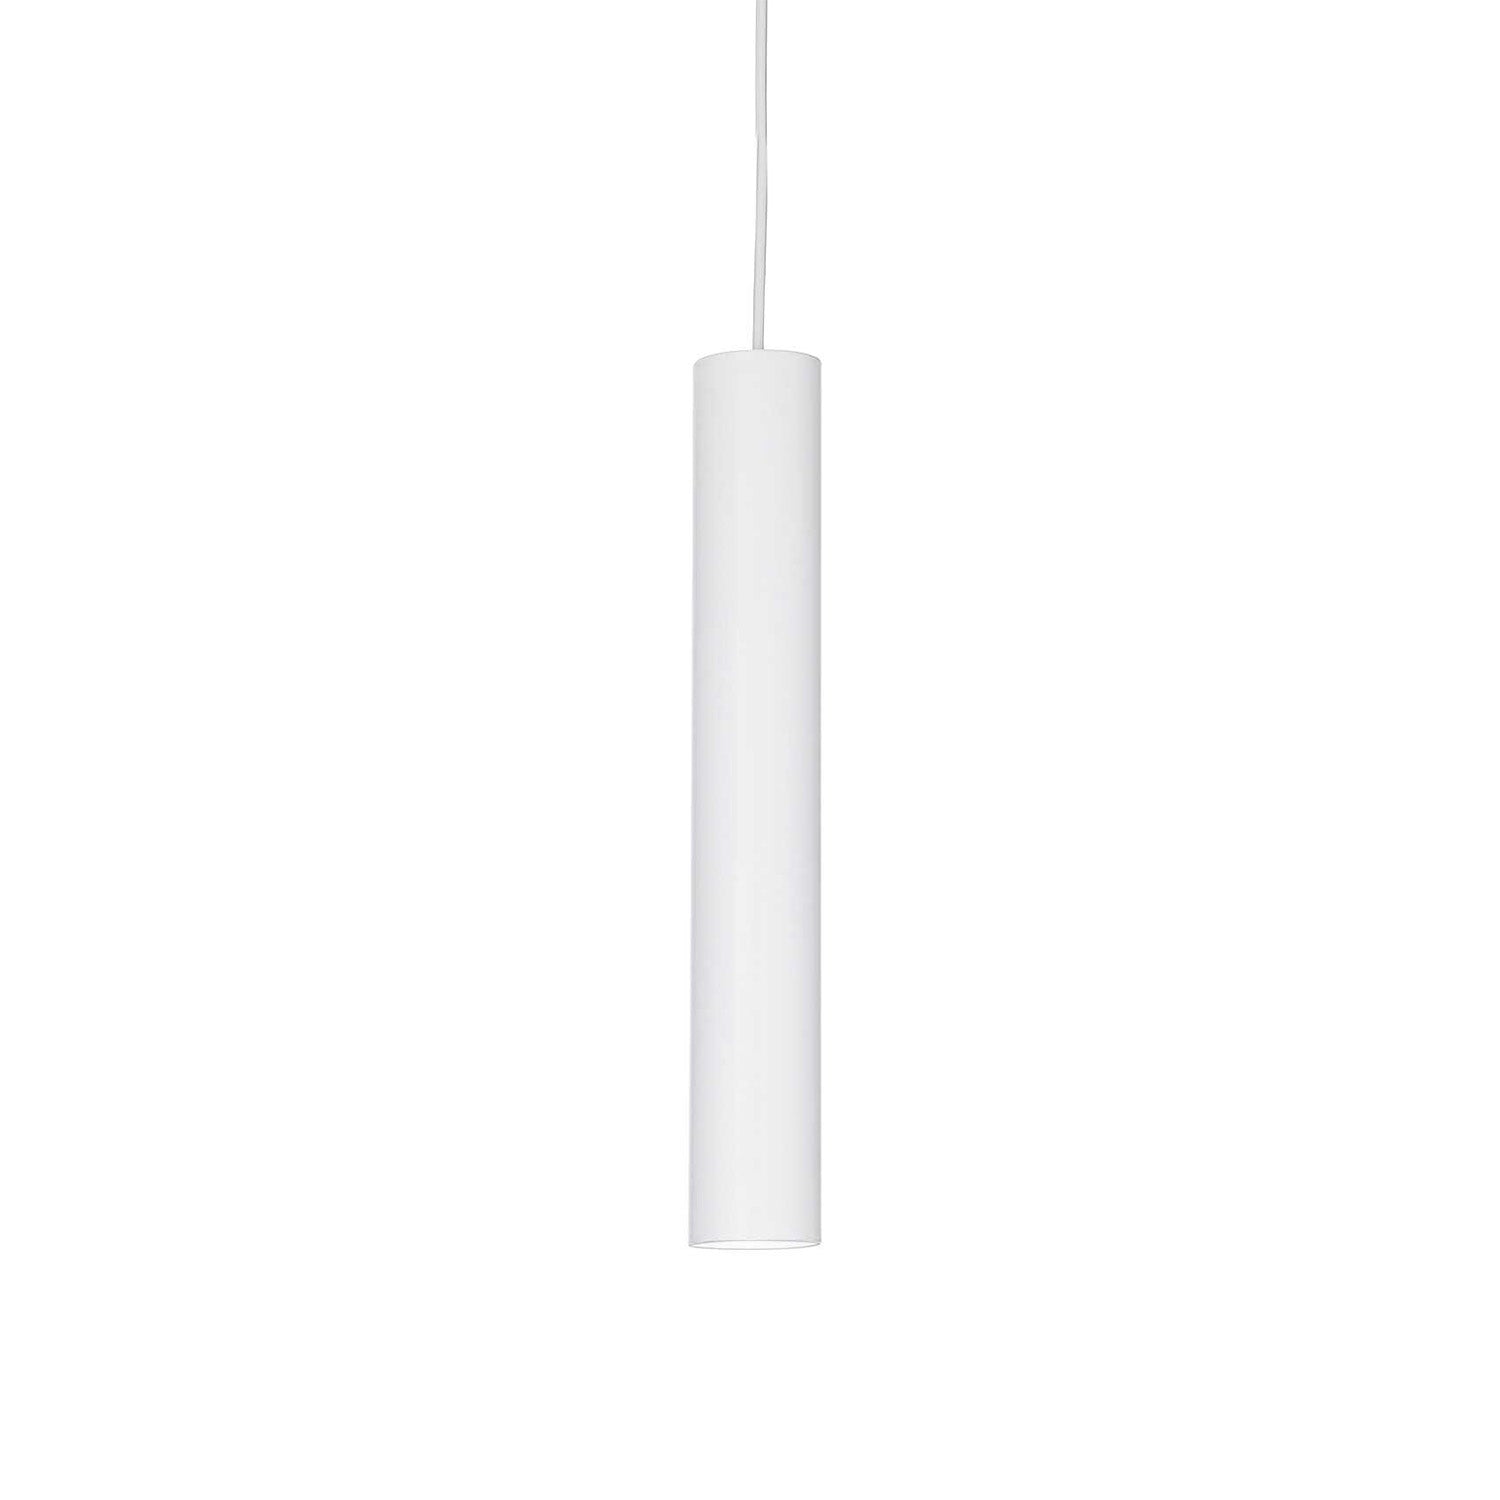 TUBE - Integrated LED tube pendant light in black or white steel